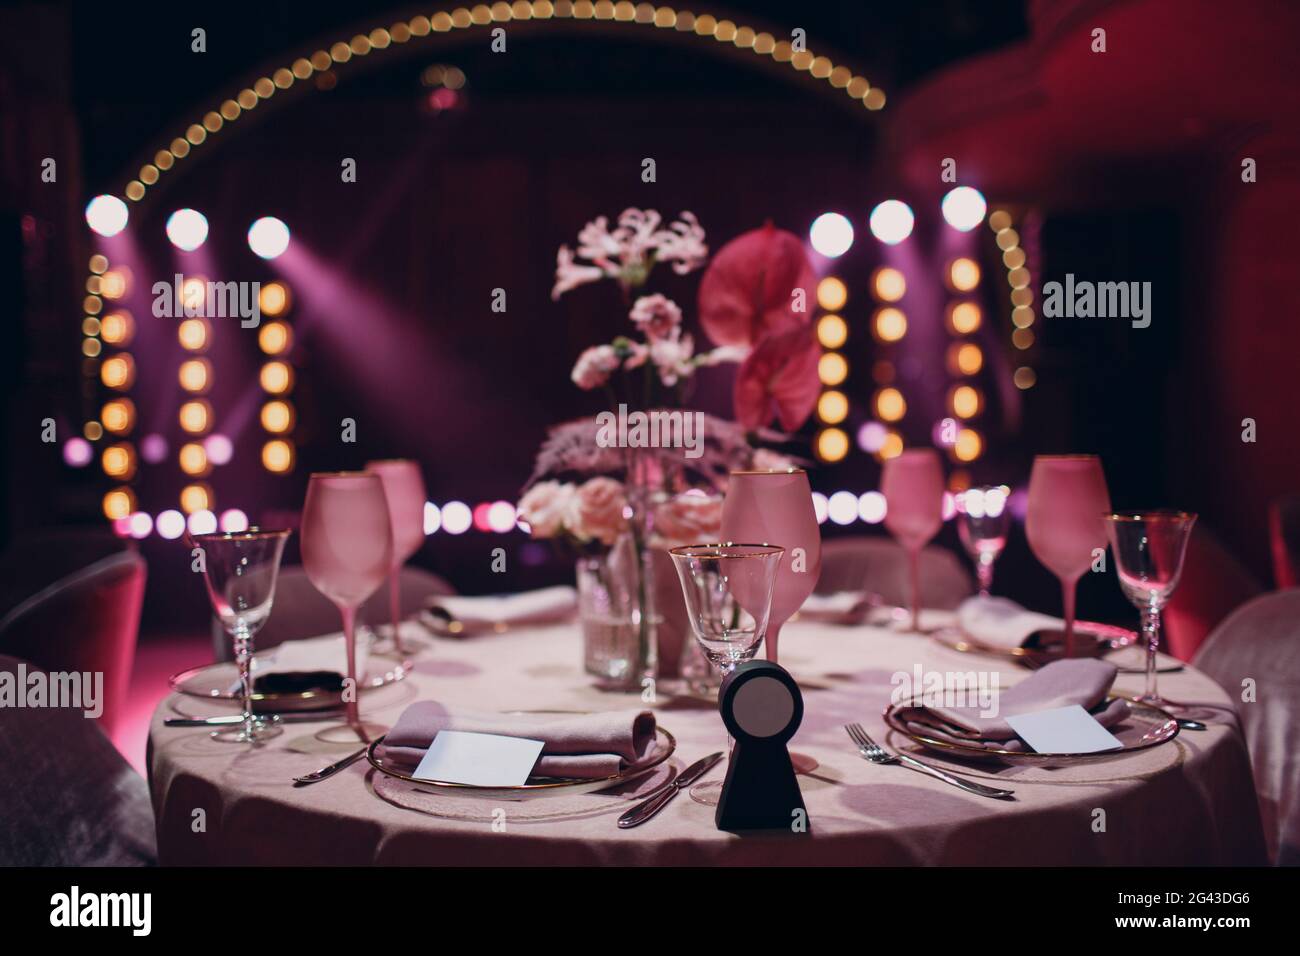 Dîner romantique table au décor rose au restaurant avec scène Banque D'Images